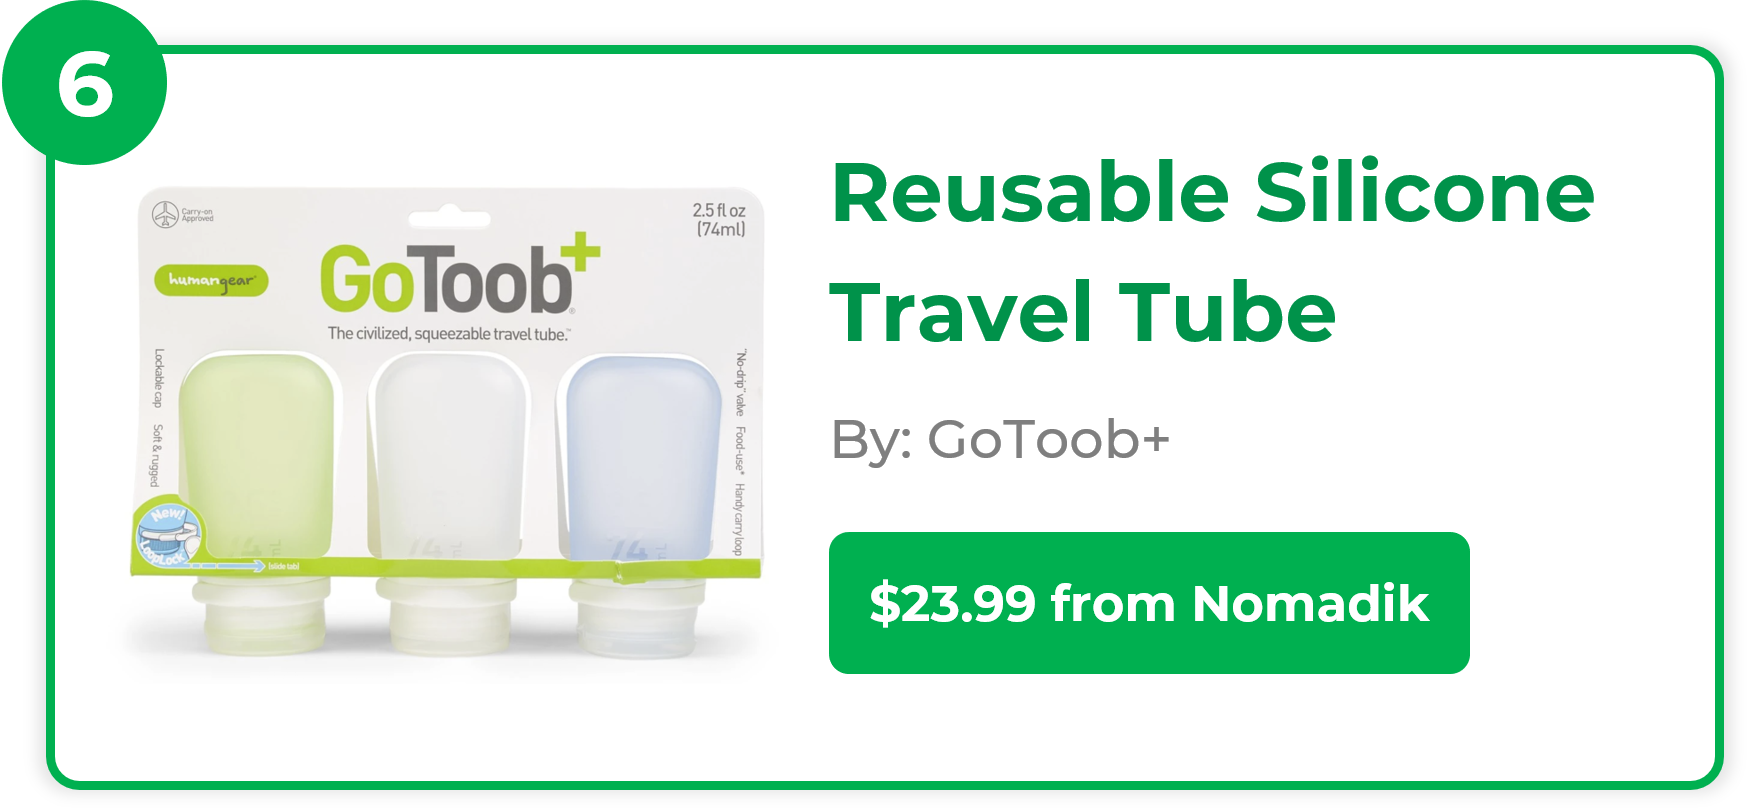 Reusable Silicone Travel Tube - GoToob+